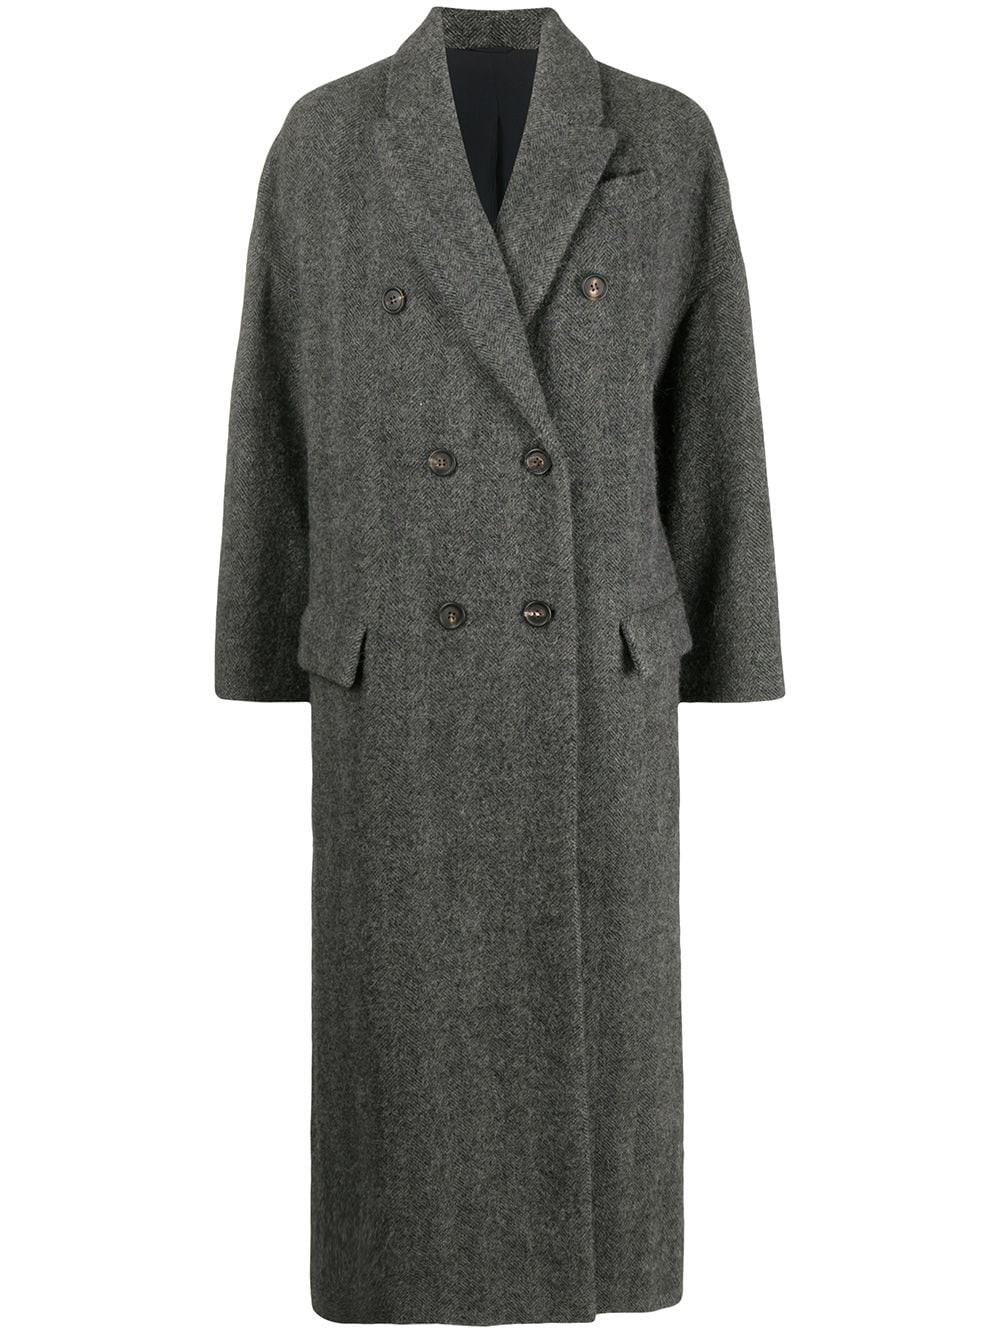 Cappotto doppiopetto in lana vergine e alpaca - Grigio scuro